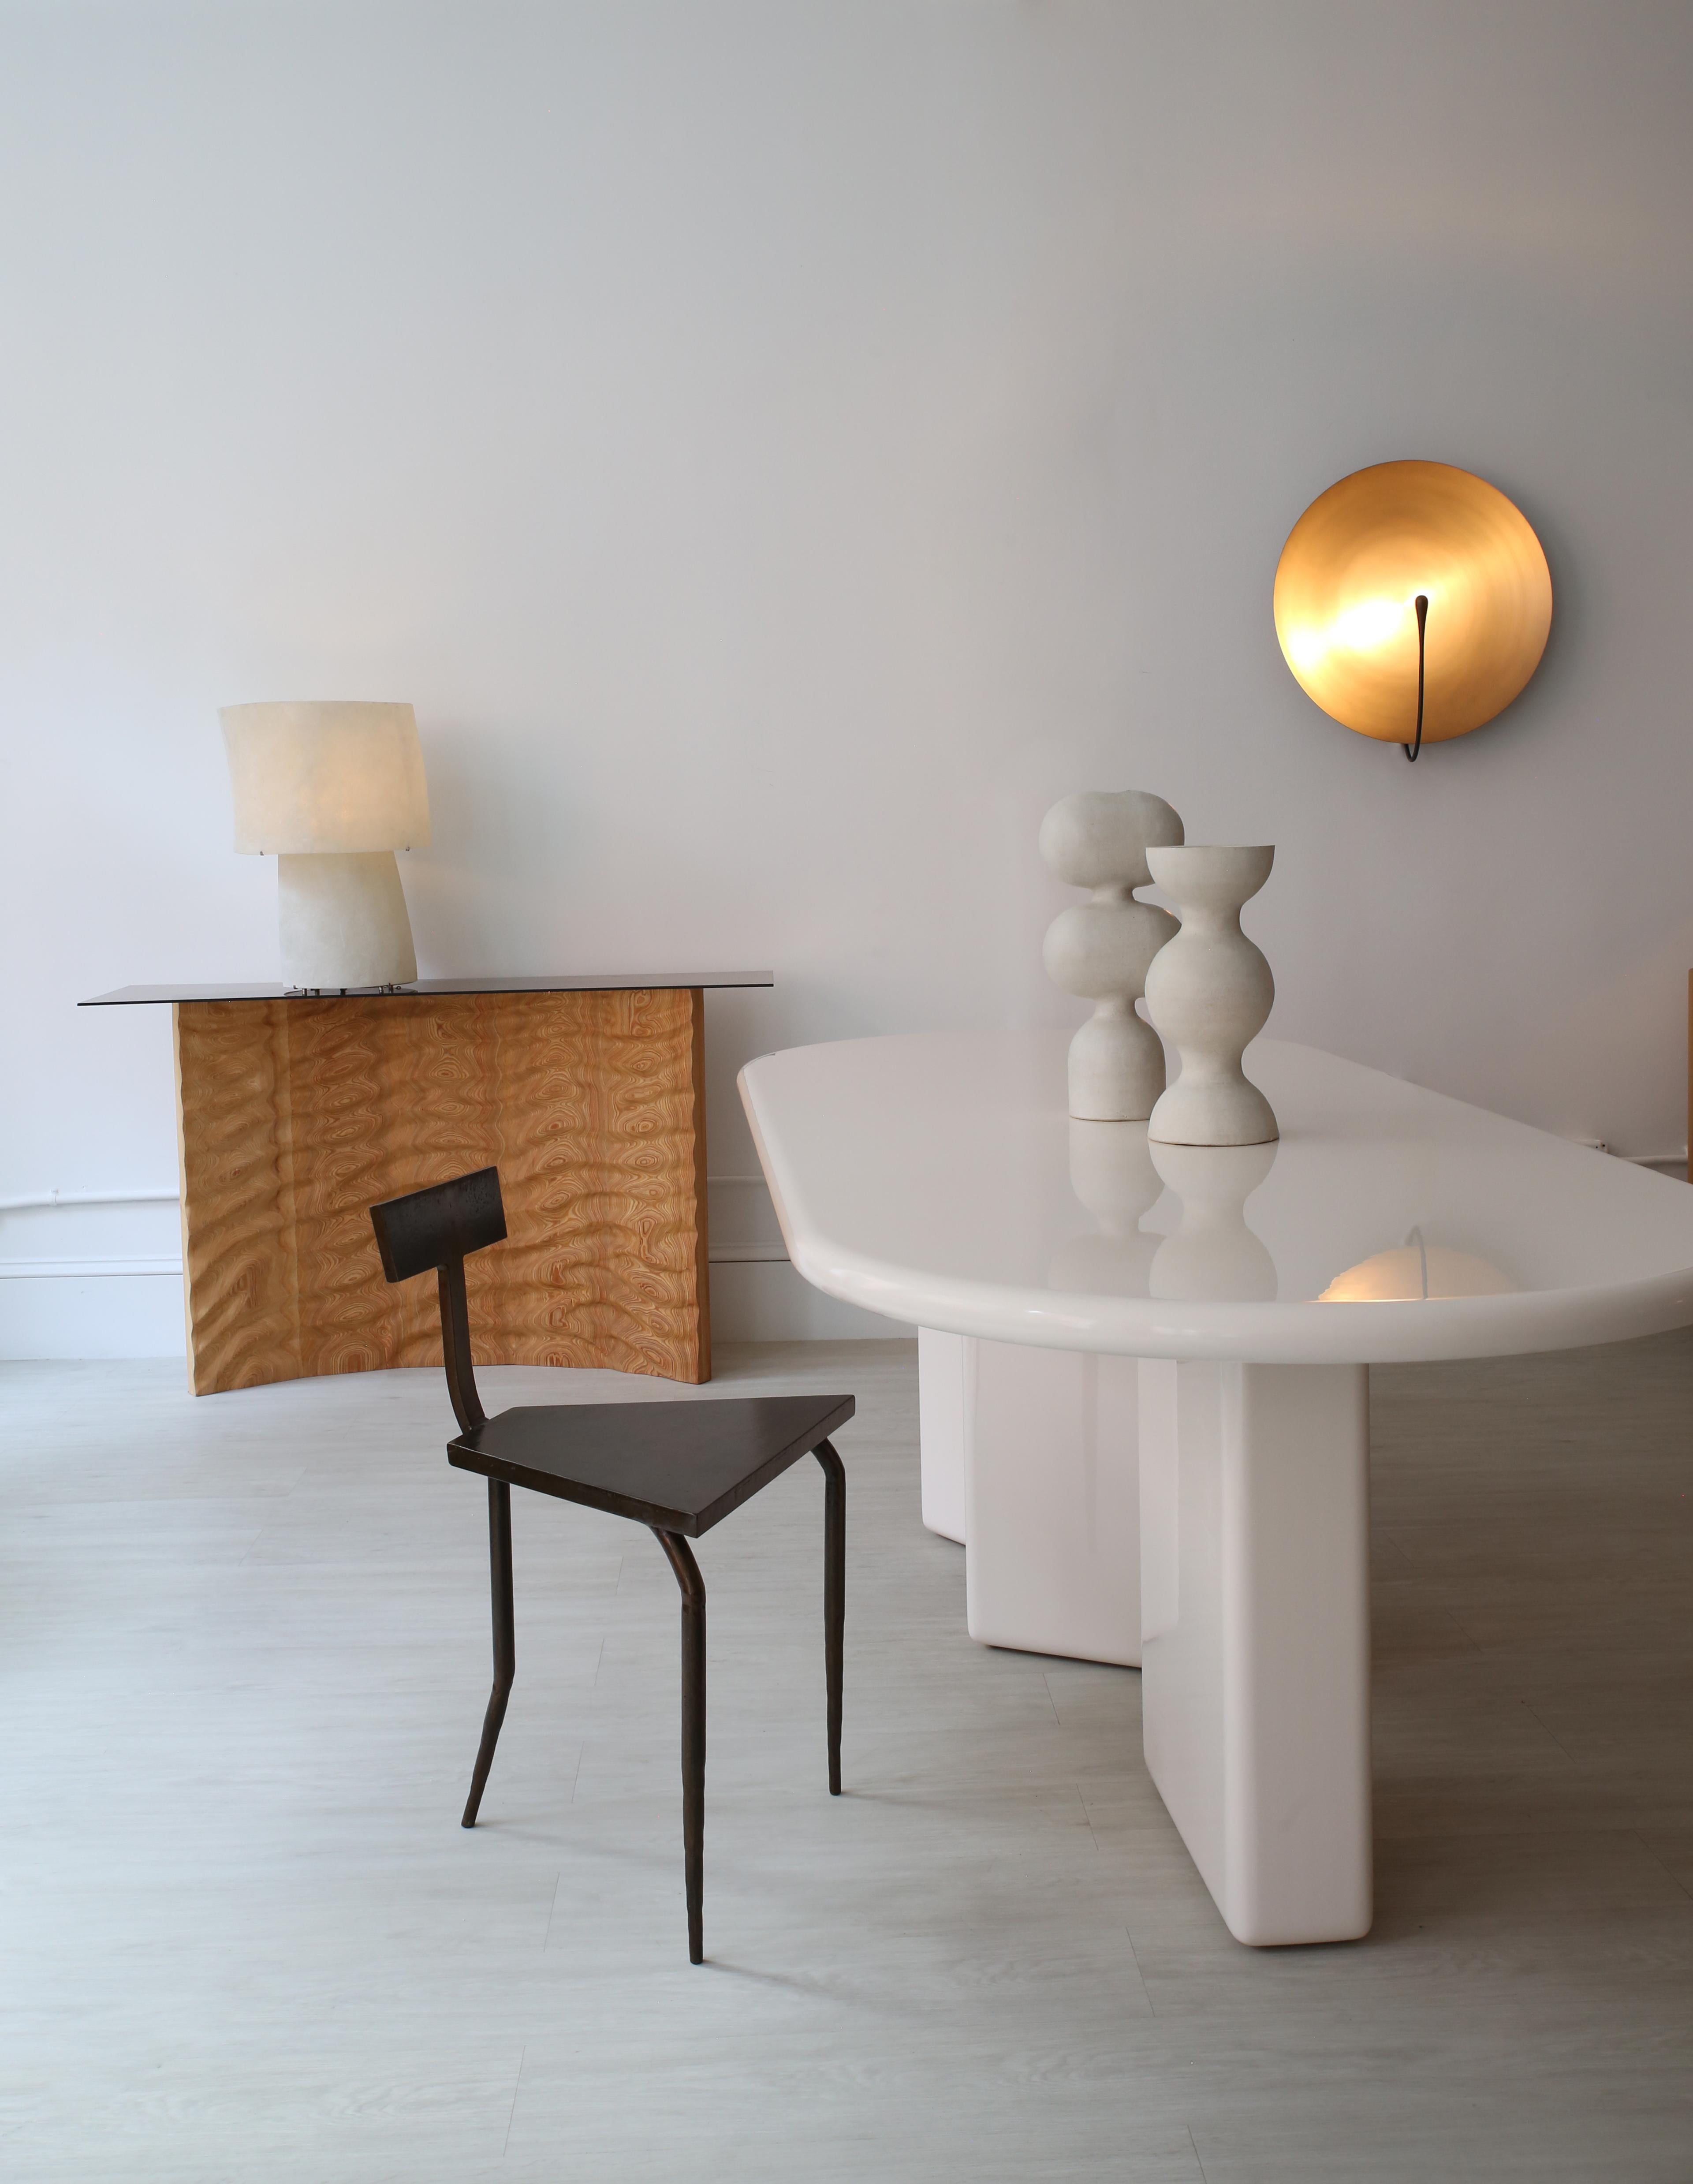 Guya-Stuhl von Cal Summers
Dimension:  T 43 x B 48,2 x H 48,2 cm
MATERIALIEN: Eiche

Cal Summers ist ein britischer Designer, der maßgeschneiderte handgefertigte Möbel und zeitgenössische Artefakte herstellt, in denen er die Grenzen von Materialität